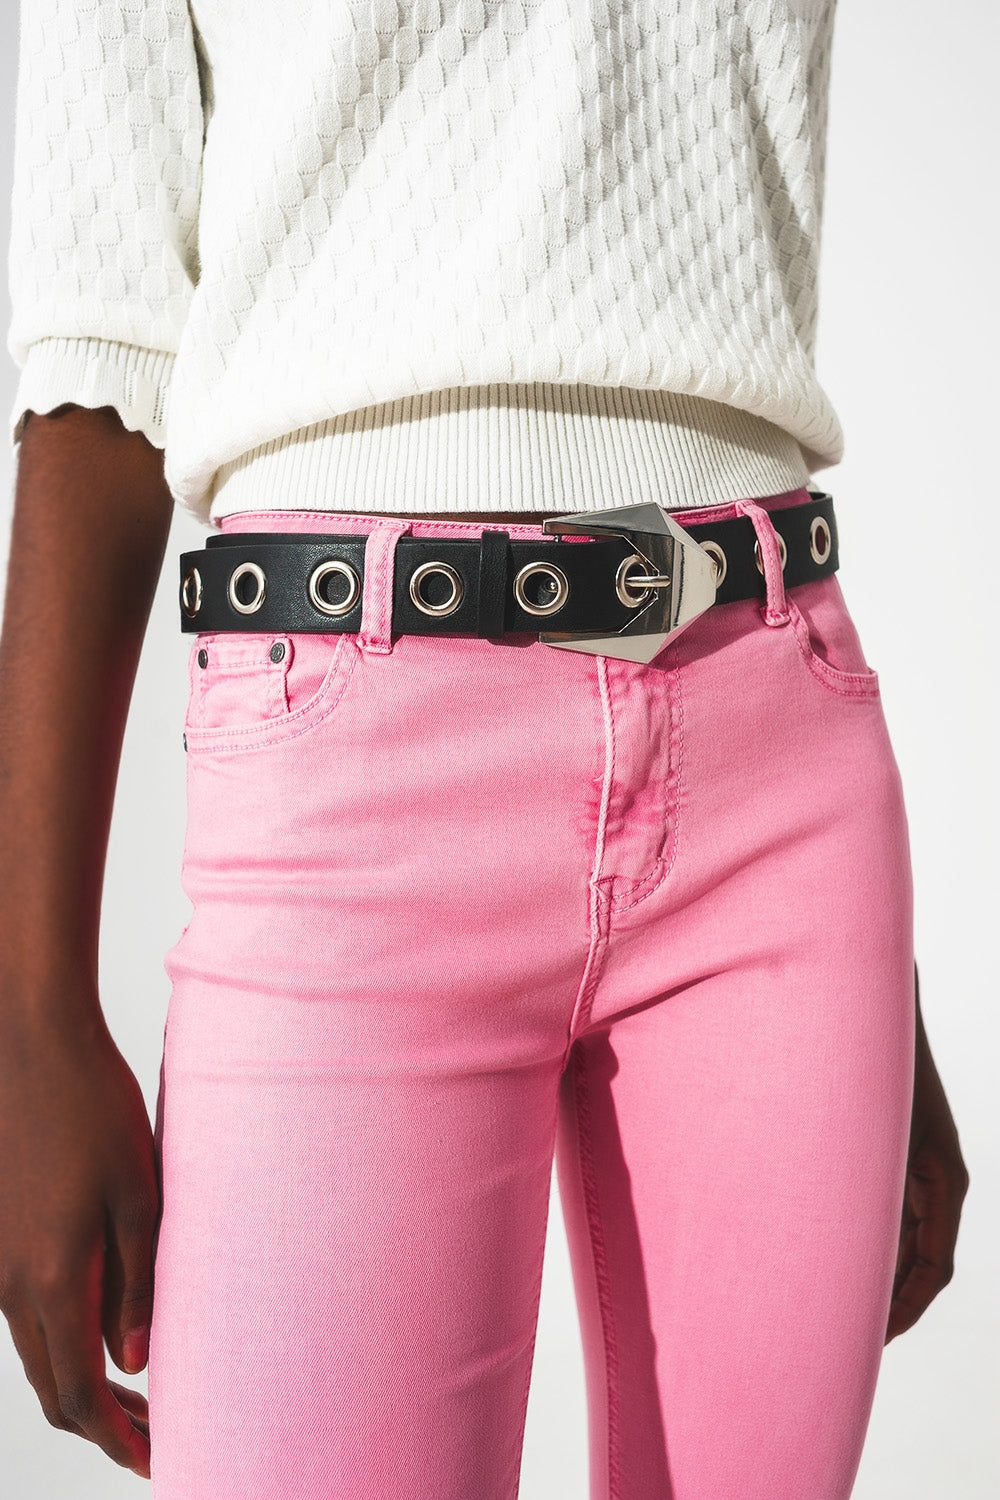 Flare jeans with raw hem edge in bubblegum pink - Szua Store